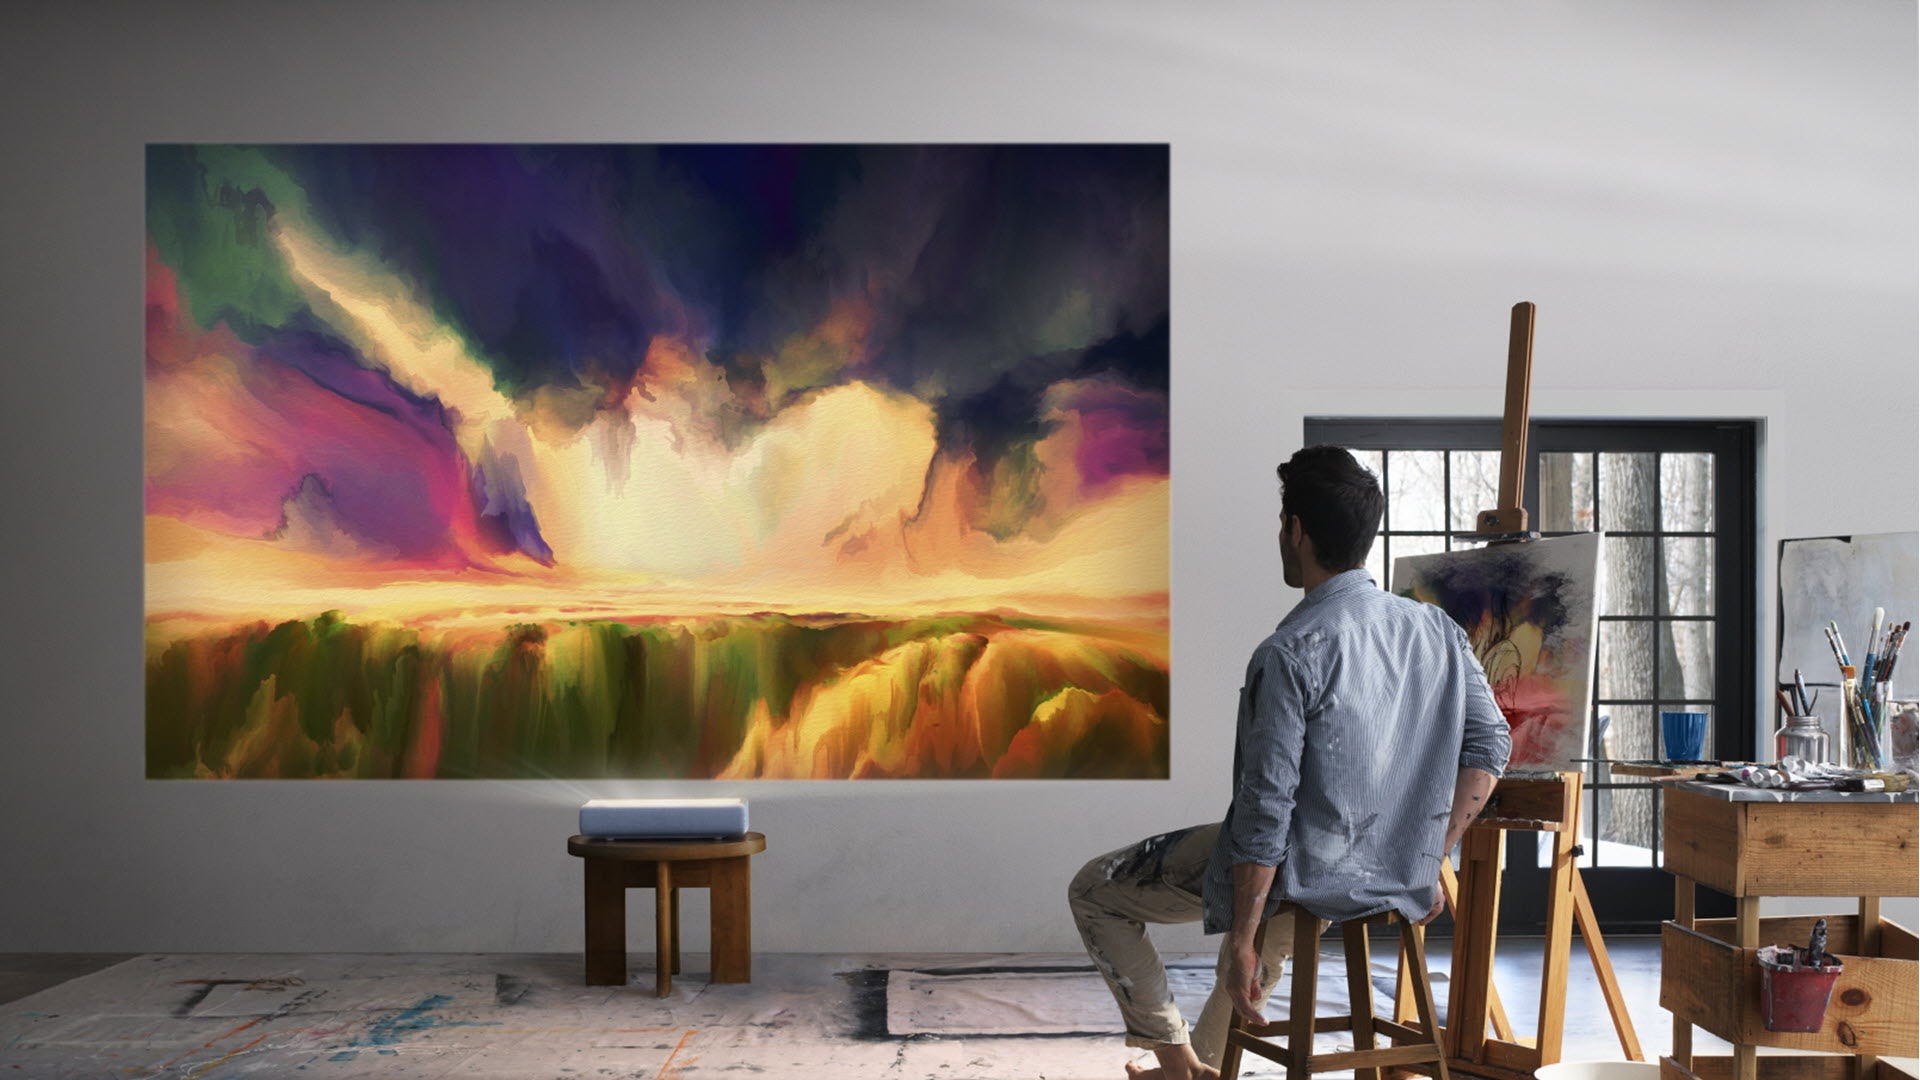 Một người đàn ông đang nhìn vào một bức tranh khổng lồ được chiếu trên tường.